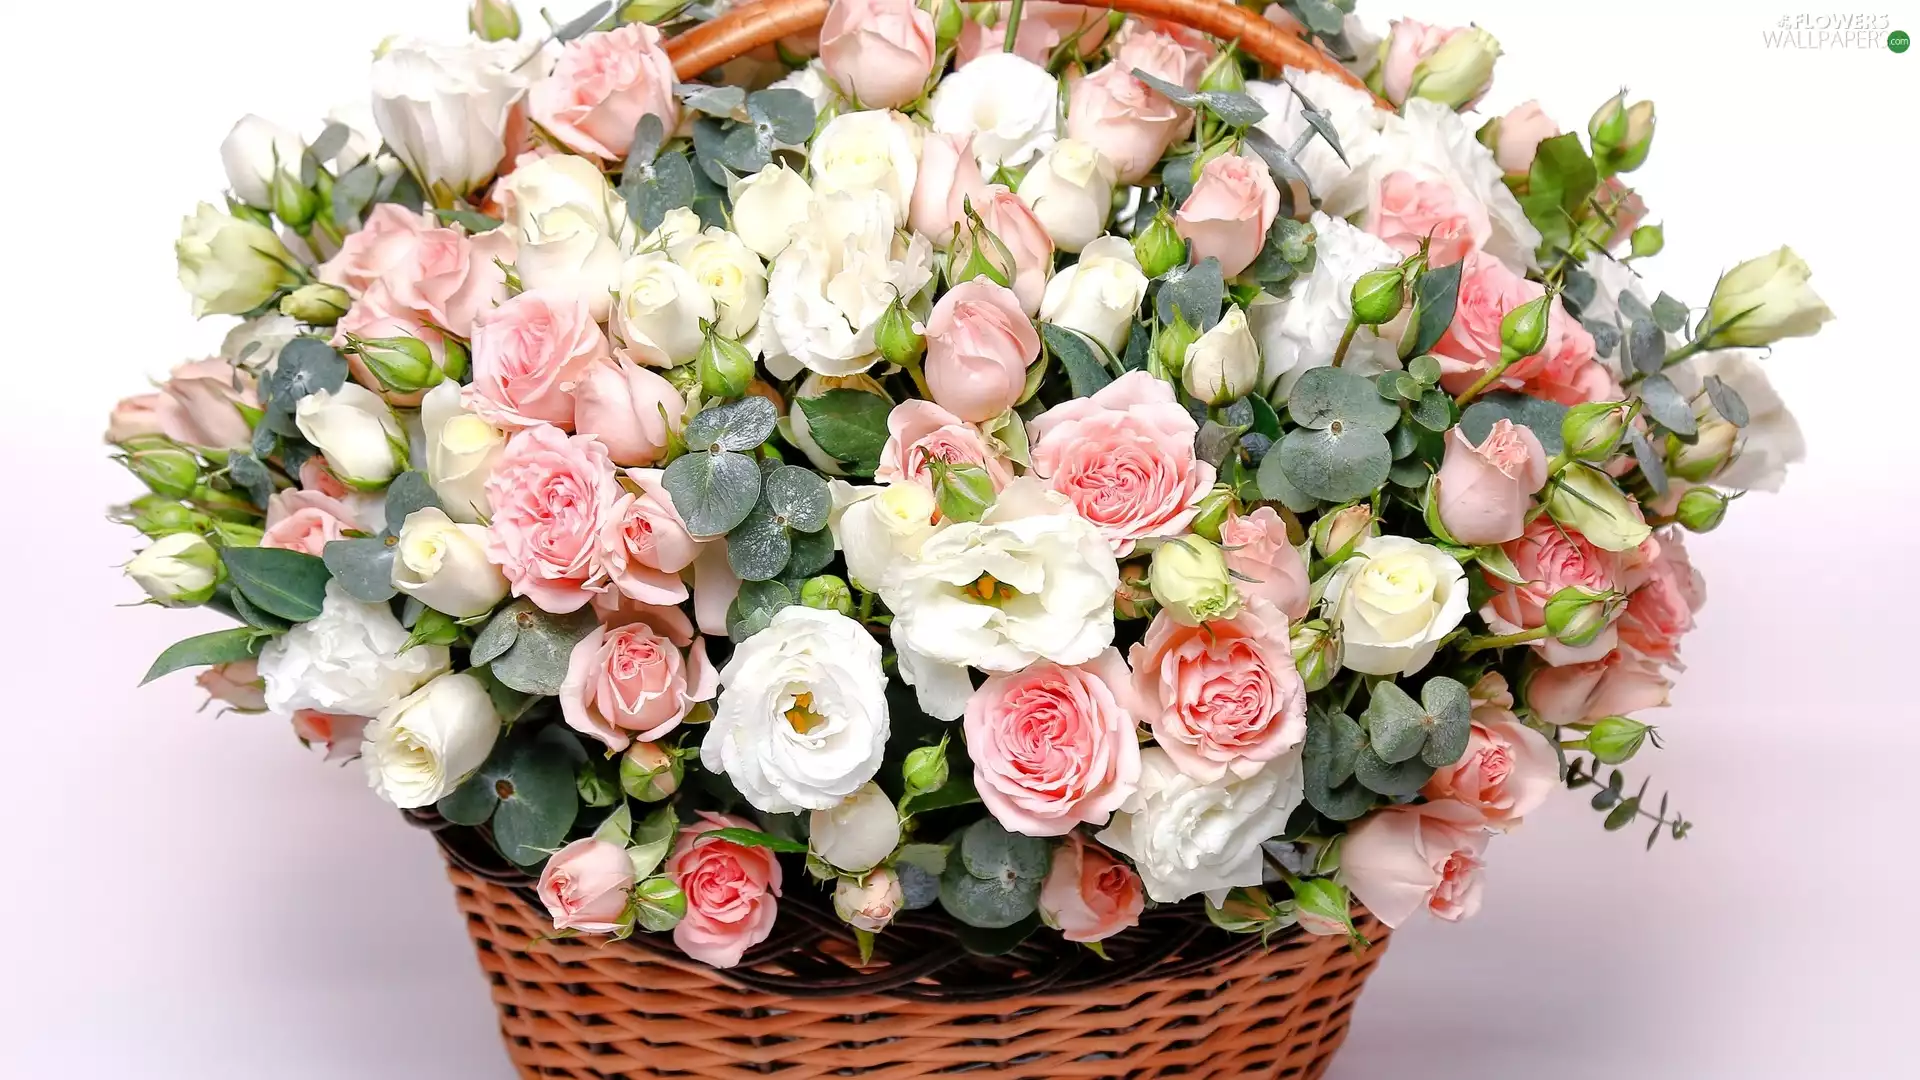 bouquet, wicker, basket, roses